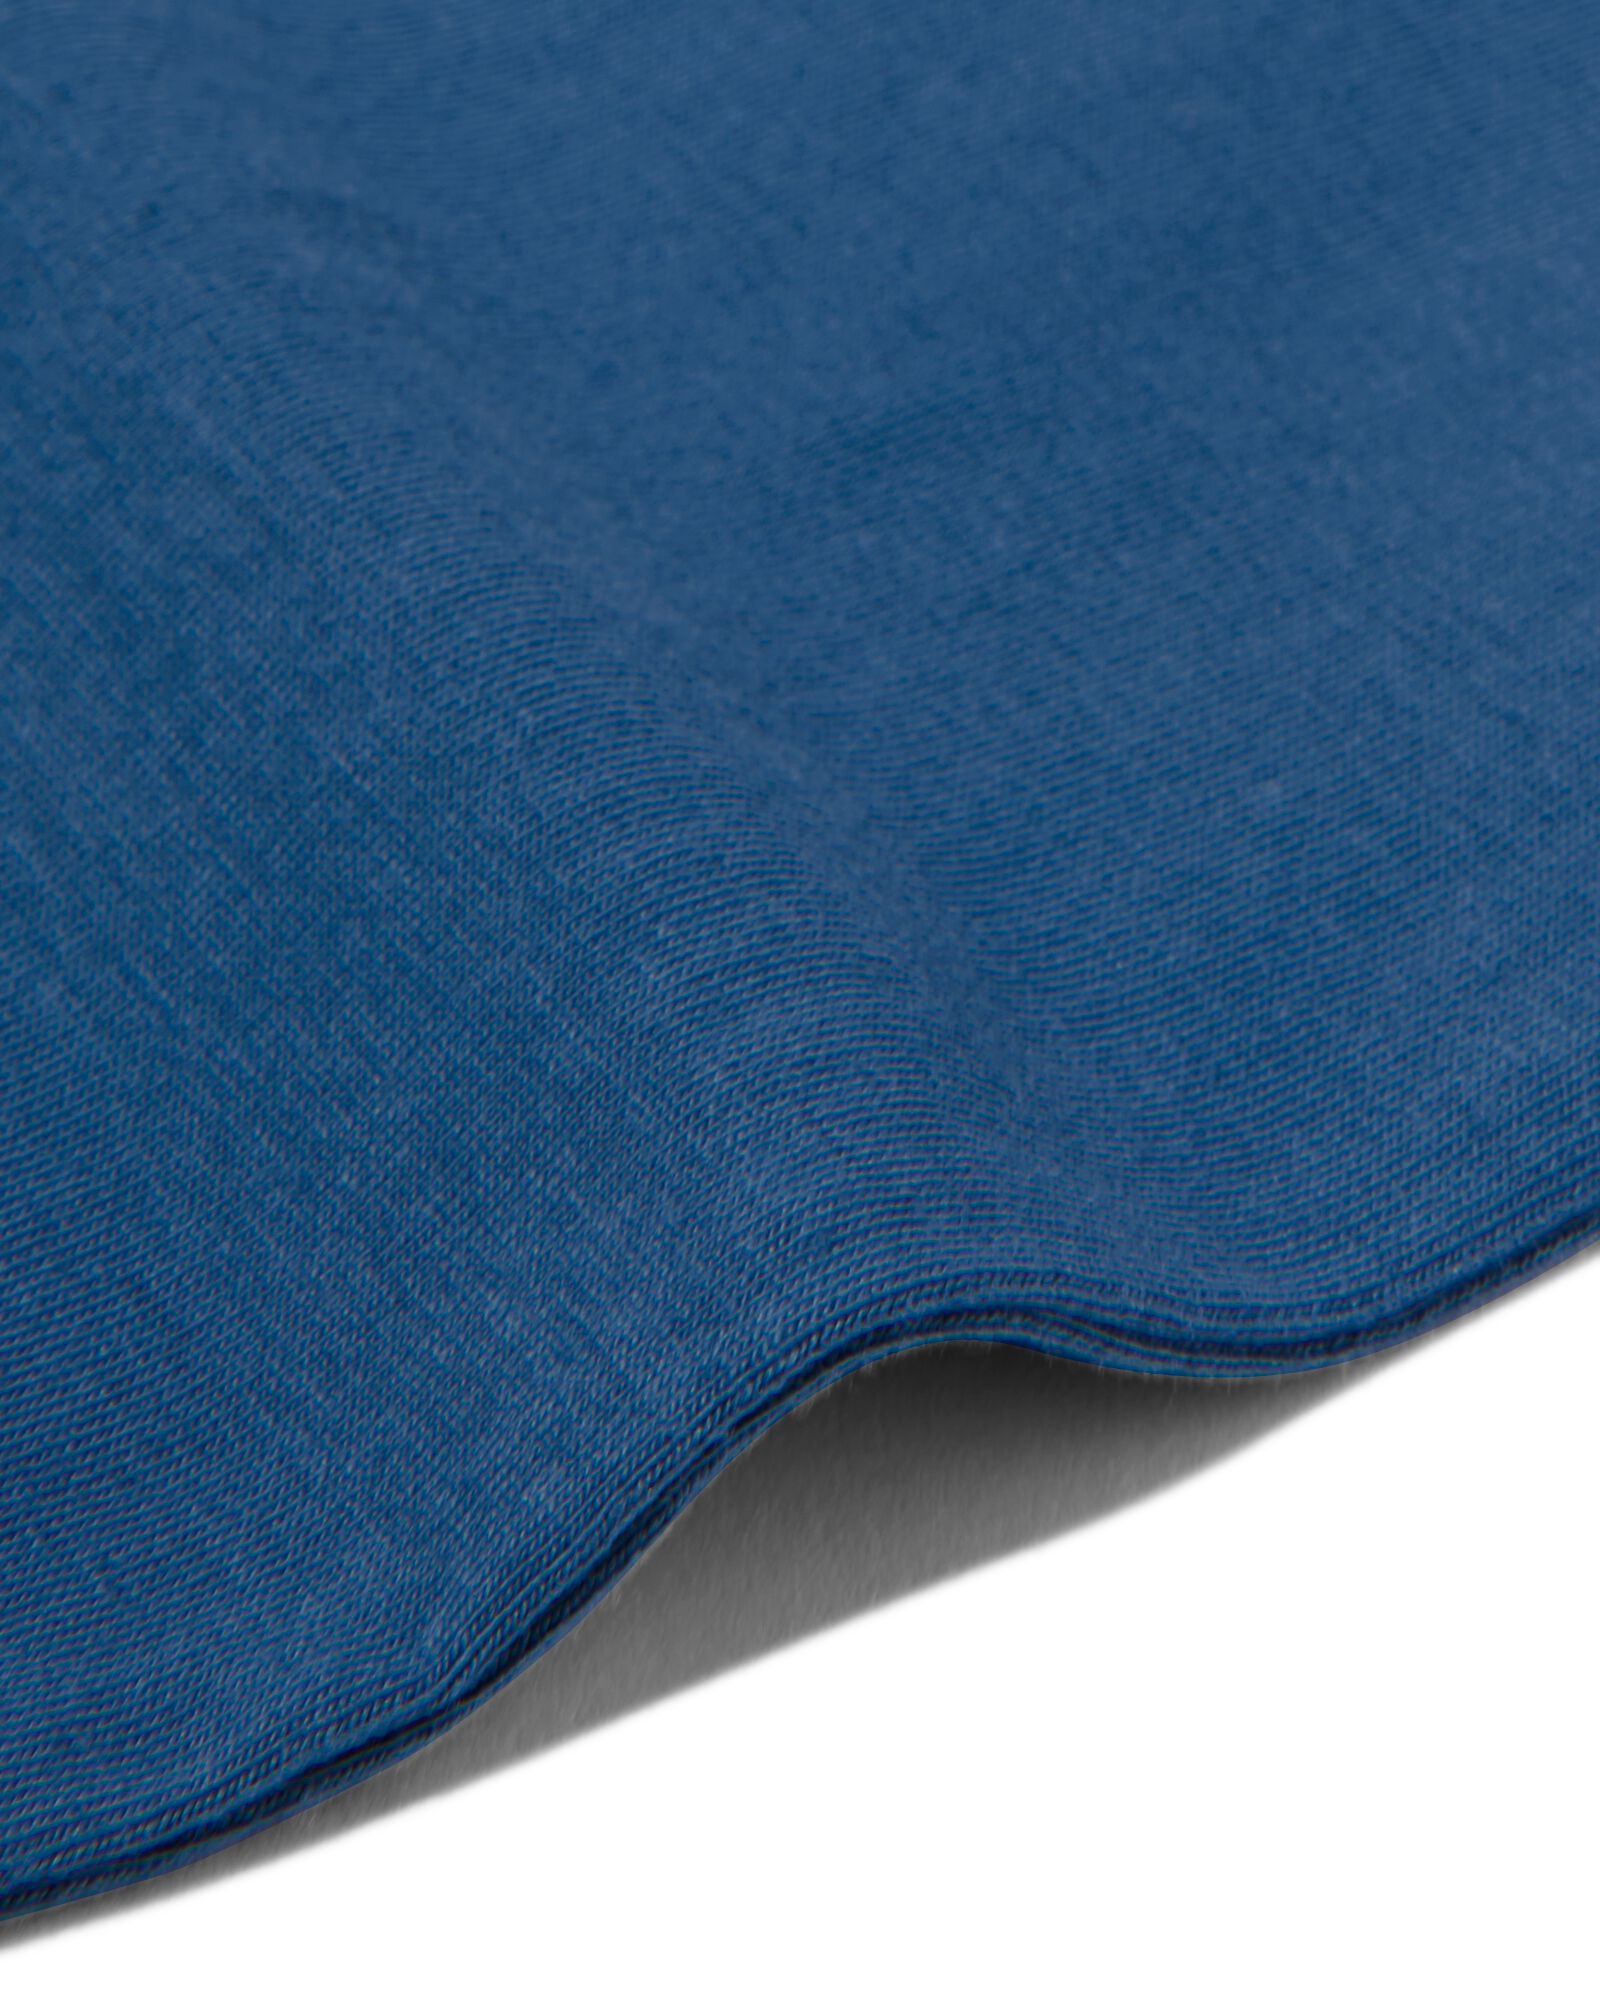 kinderhemden stretch katoen - 2 stuks donkerblauw donkerblauw - 1000030148 - HEMA